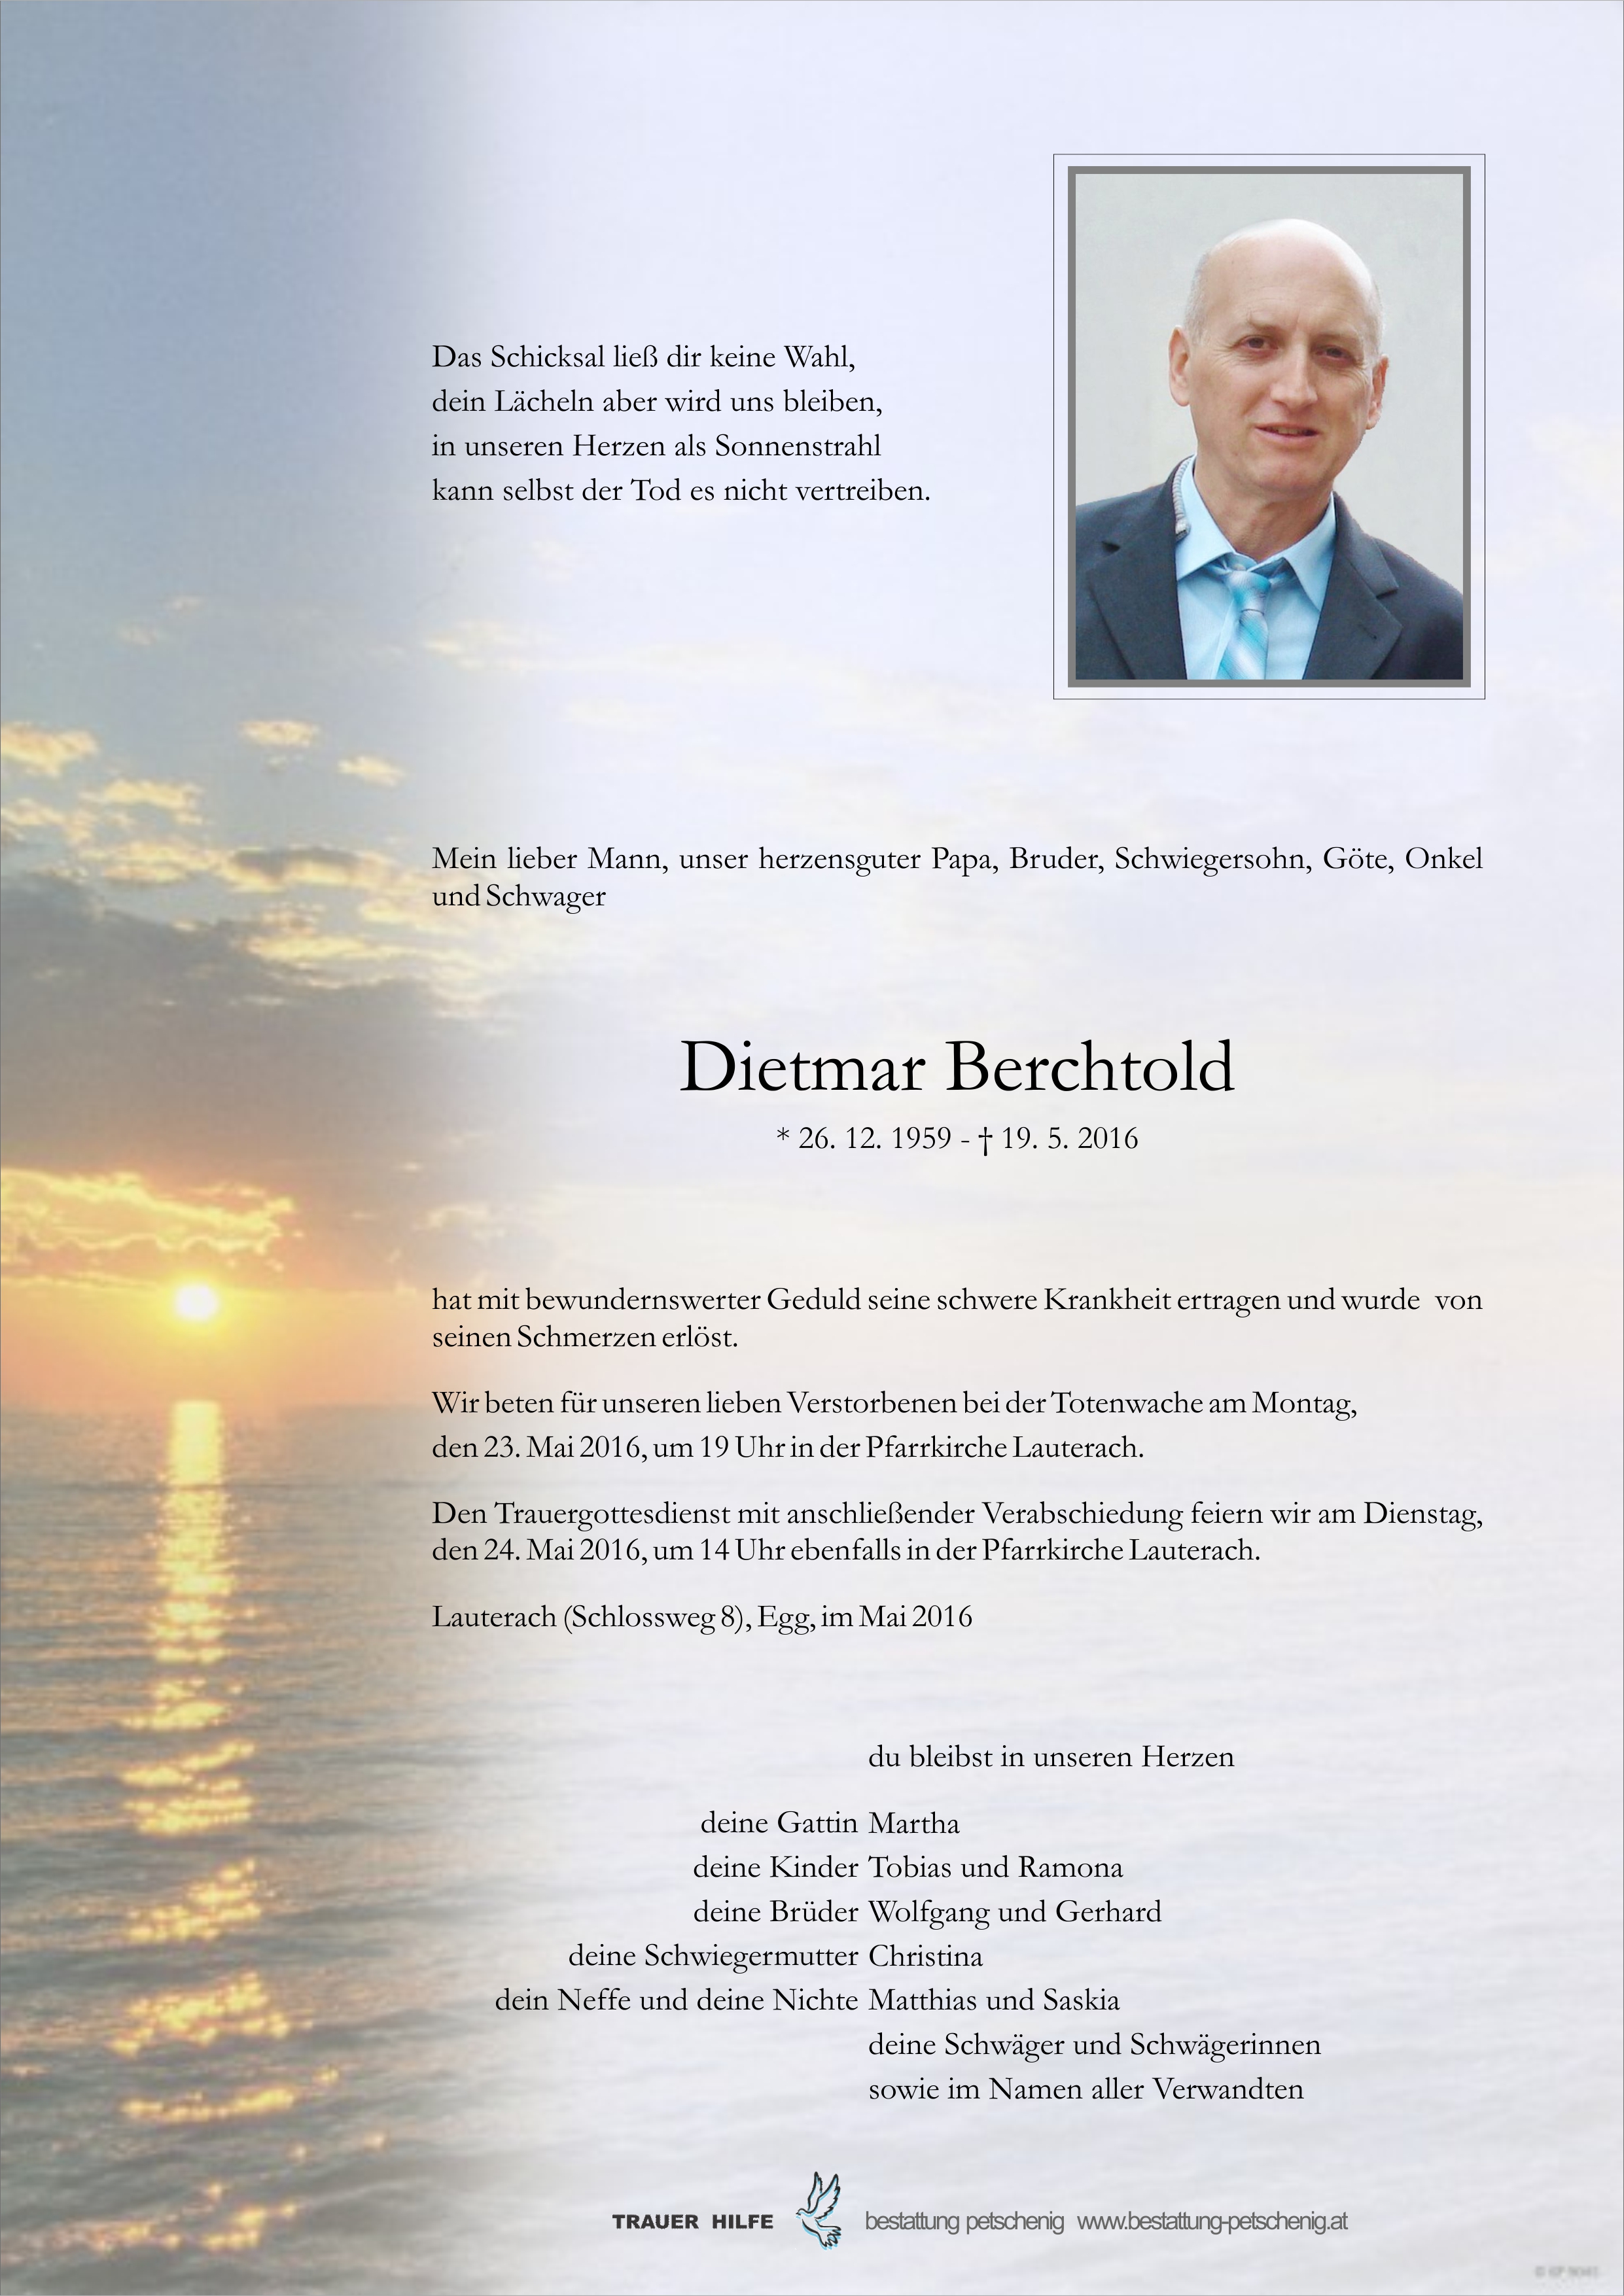 Dietmar Berchtold